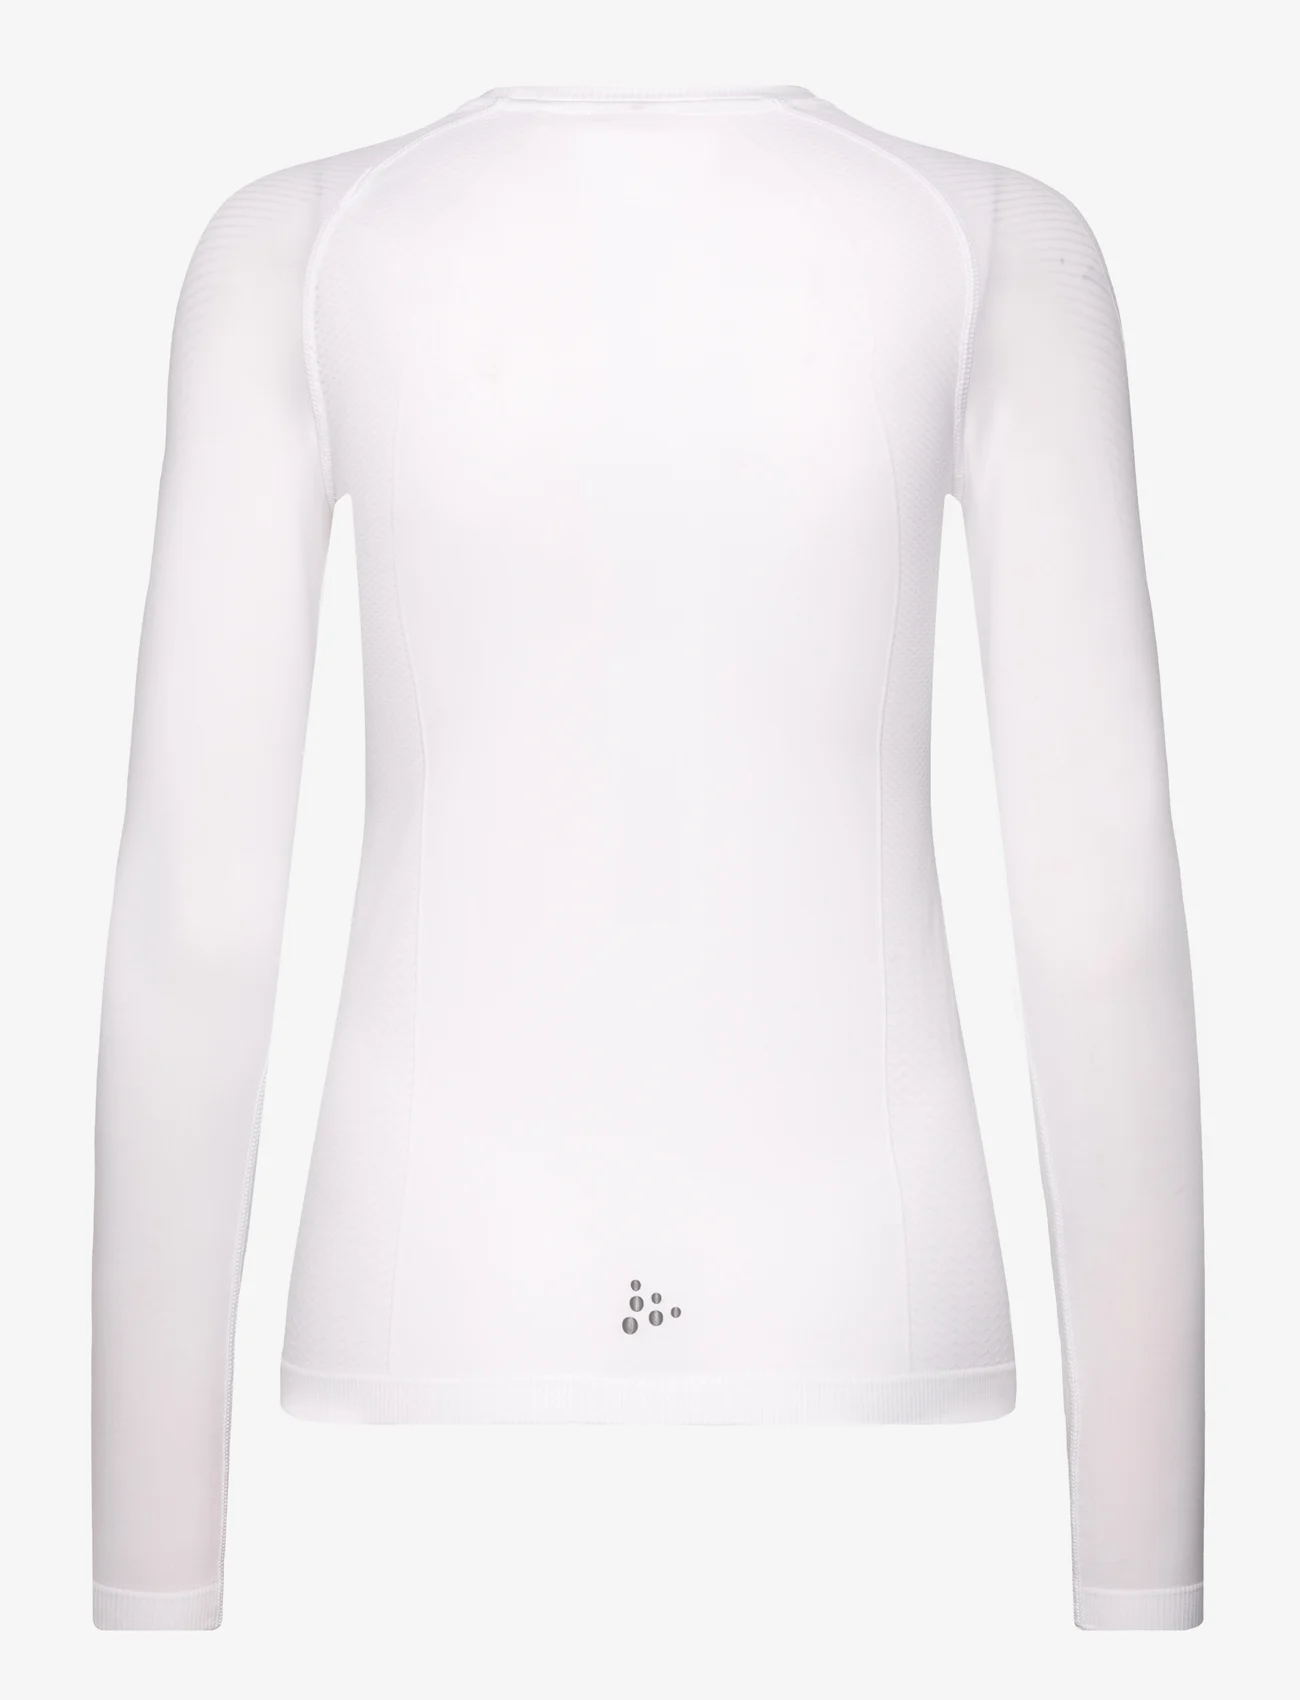 Craft - Adv Cool Intensity LS W - langarmshirts - white - 1